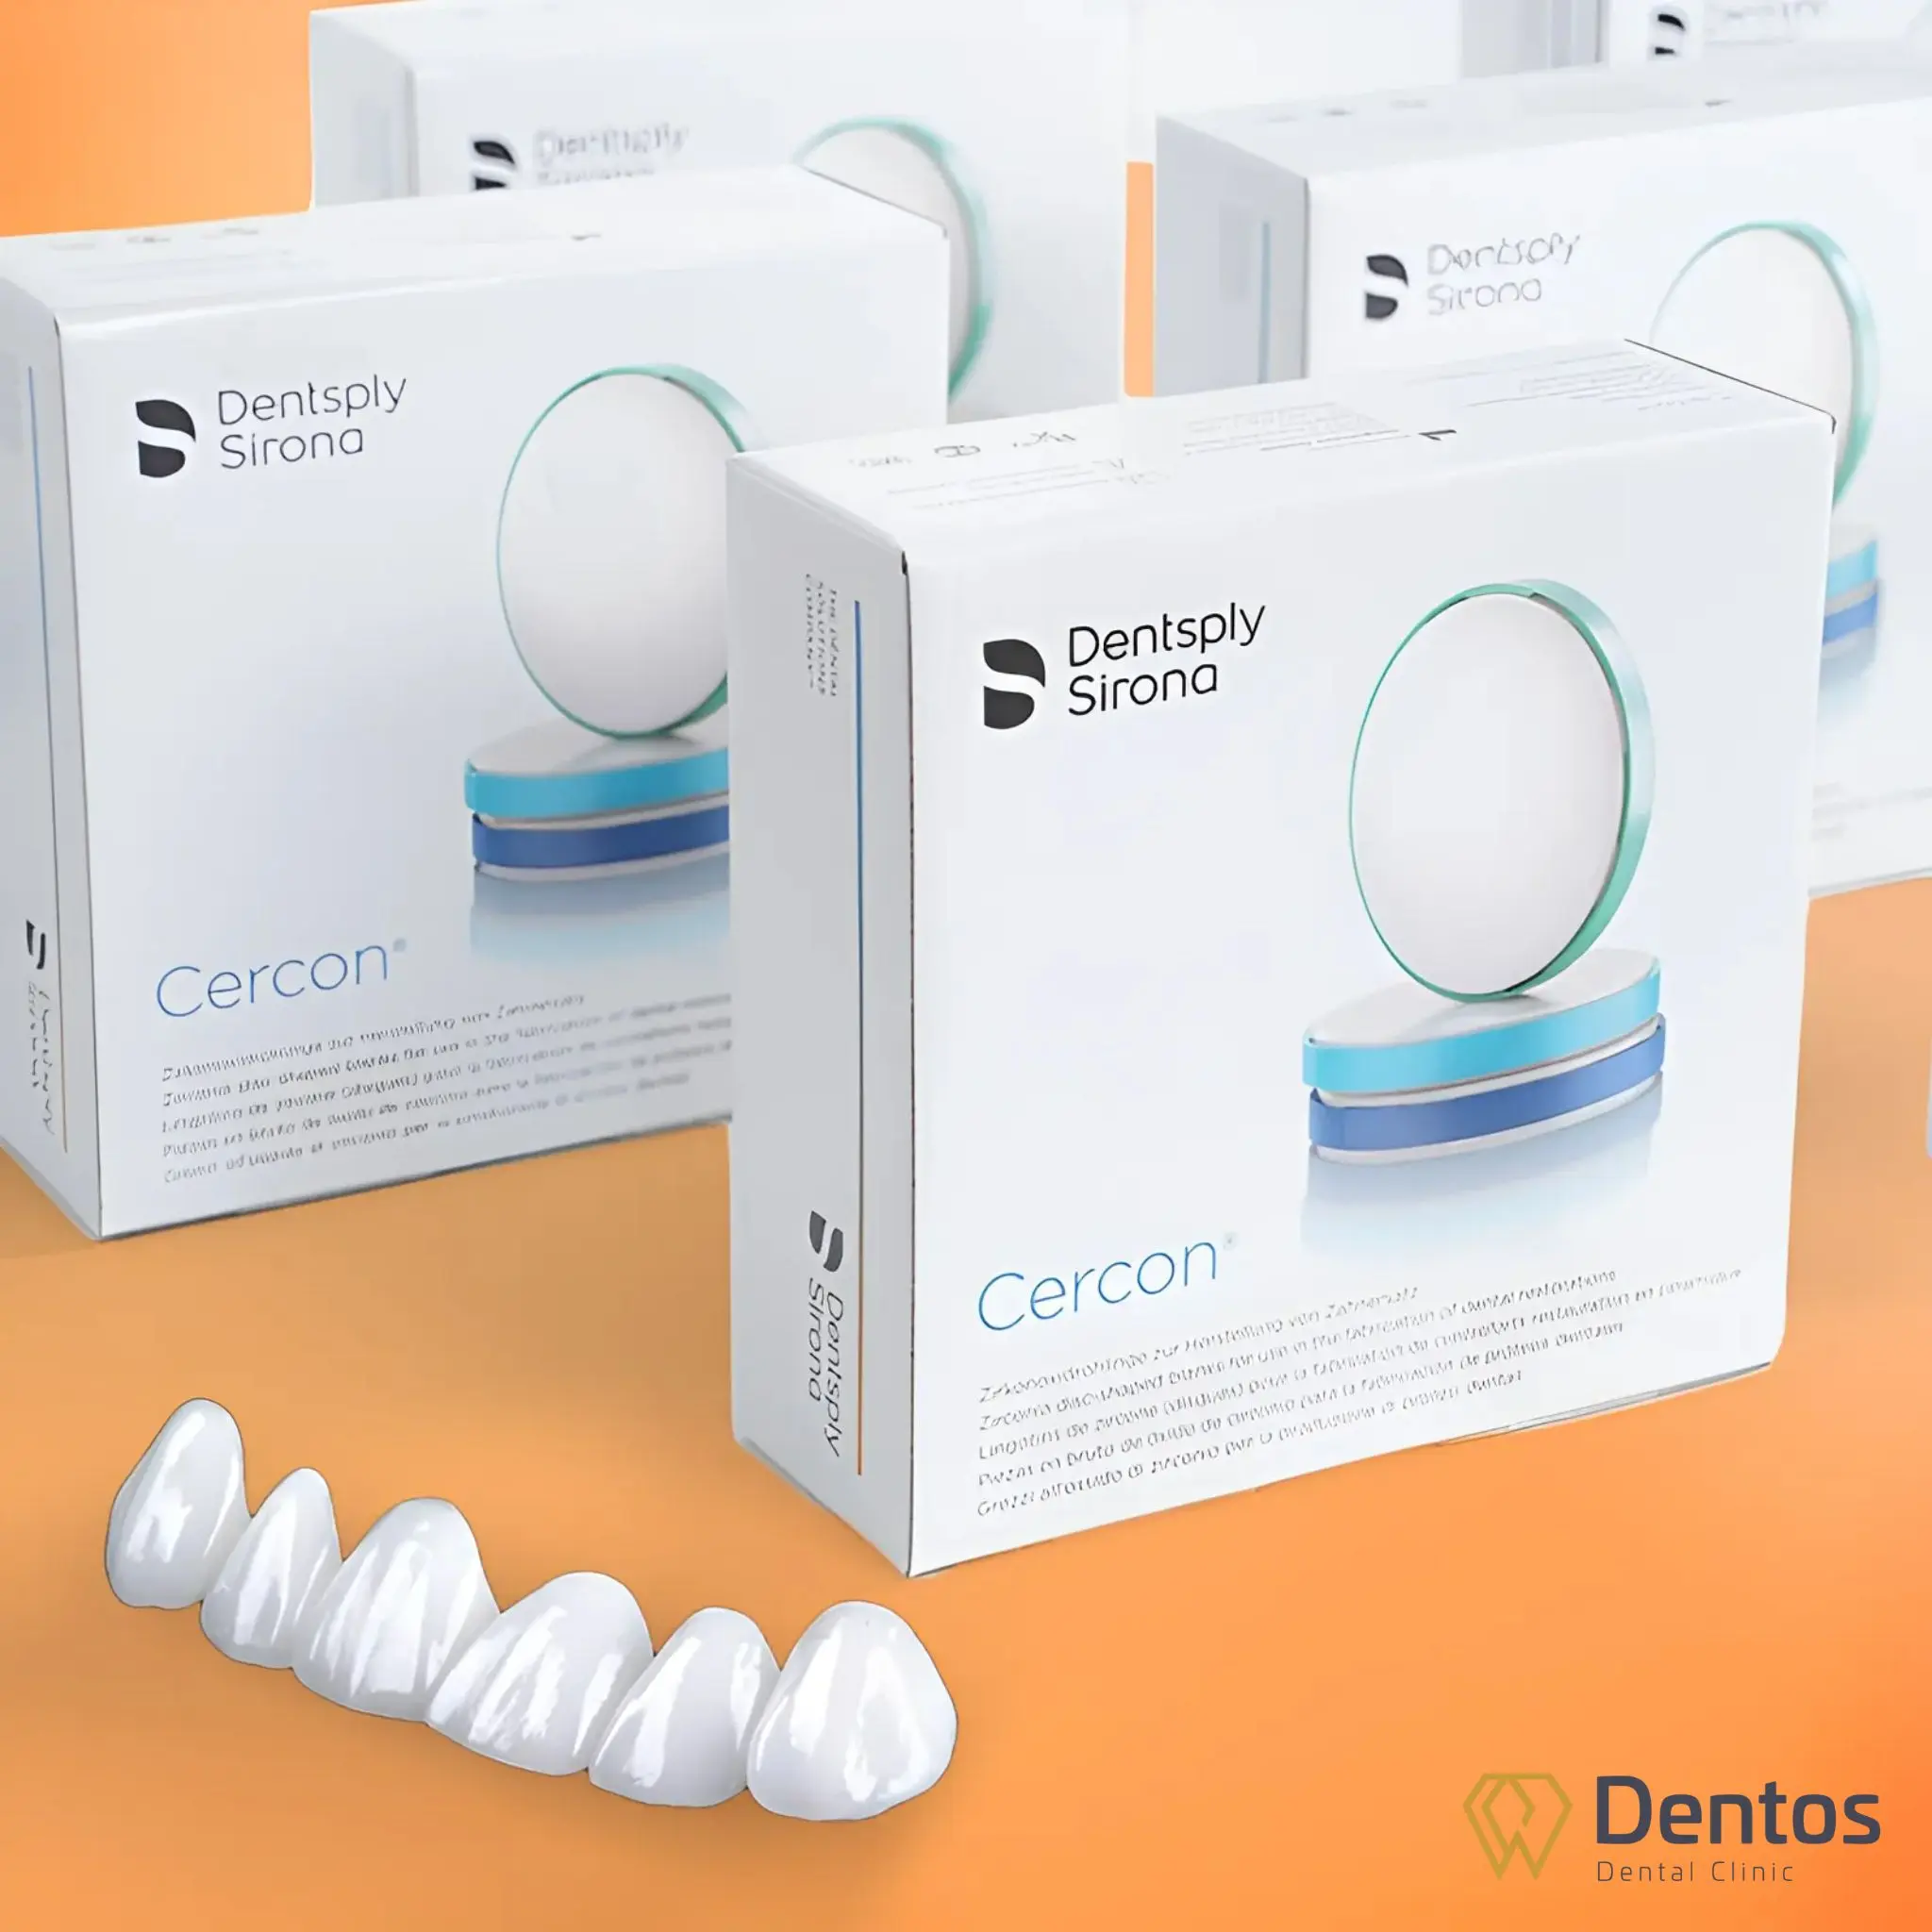 Răng sứ Cercon Ht là sản phẩm từ công nghệ của Đức, hiện được phân phối bởi Dentsply Sirona